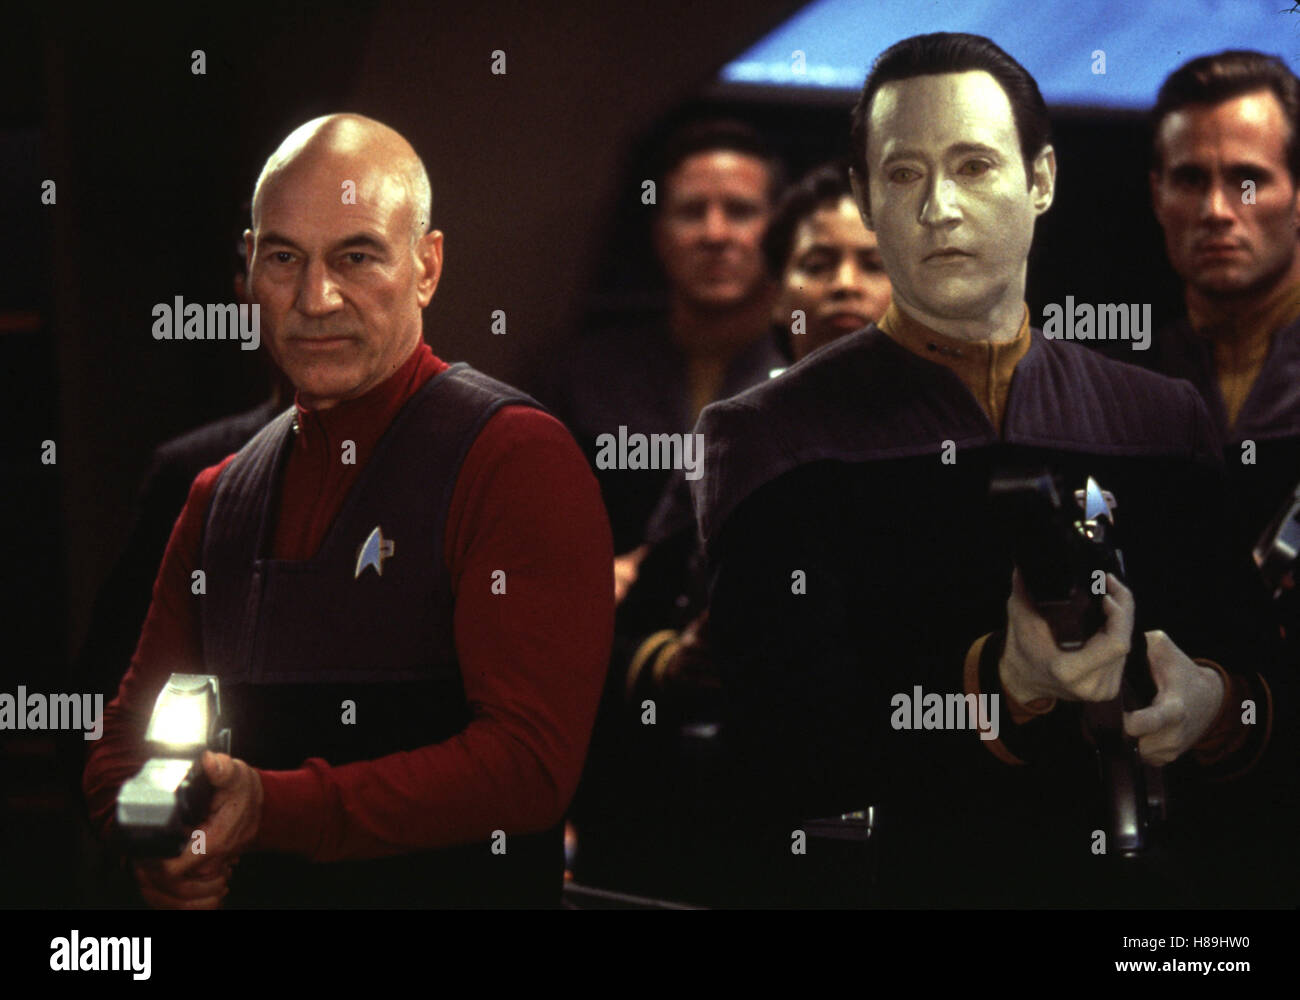 Star Trek - der erste Kontakt, (STAR TREK - FIRST CONTACT) USA 1996, Regie: Jonathan Frakes, PATRICK STEWART, BRENT SPINER, Stichwort: Waffen Stock Photo